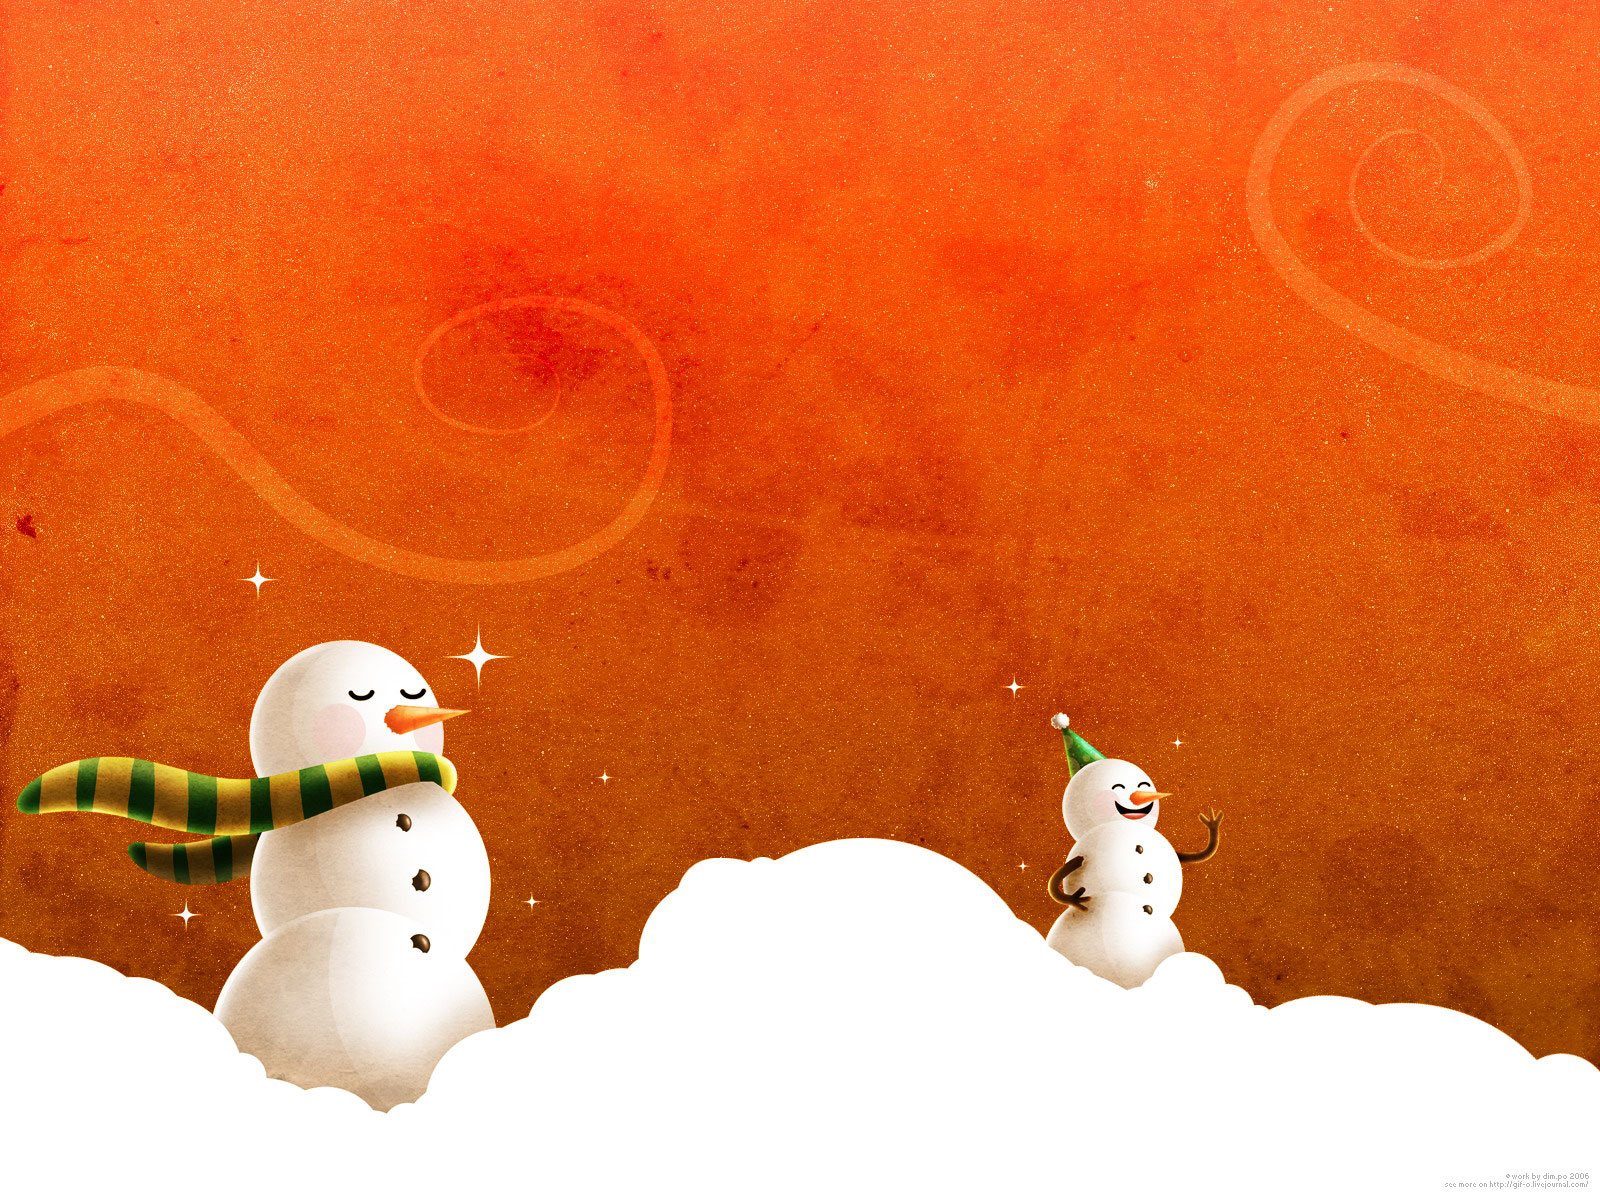 http://4.bp.blogspot.com/-nnmM_rPJJ4o/TtvN-JtnG2I/AAAAAAAADcI/6KV39jIfPFI/s1600/christmas-snowman-wallpapers-and-powerpoint-backgrounds-pictures-8.jpg